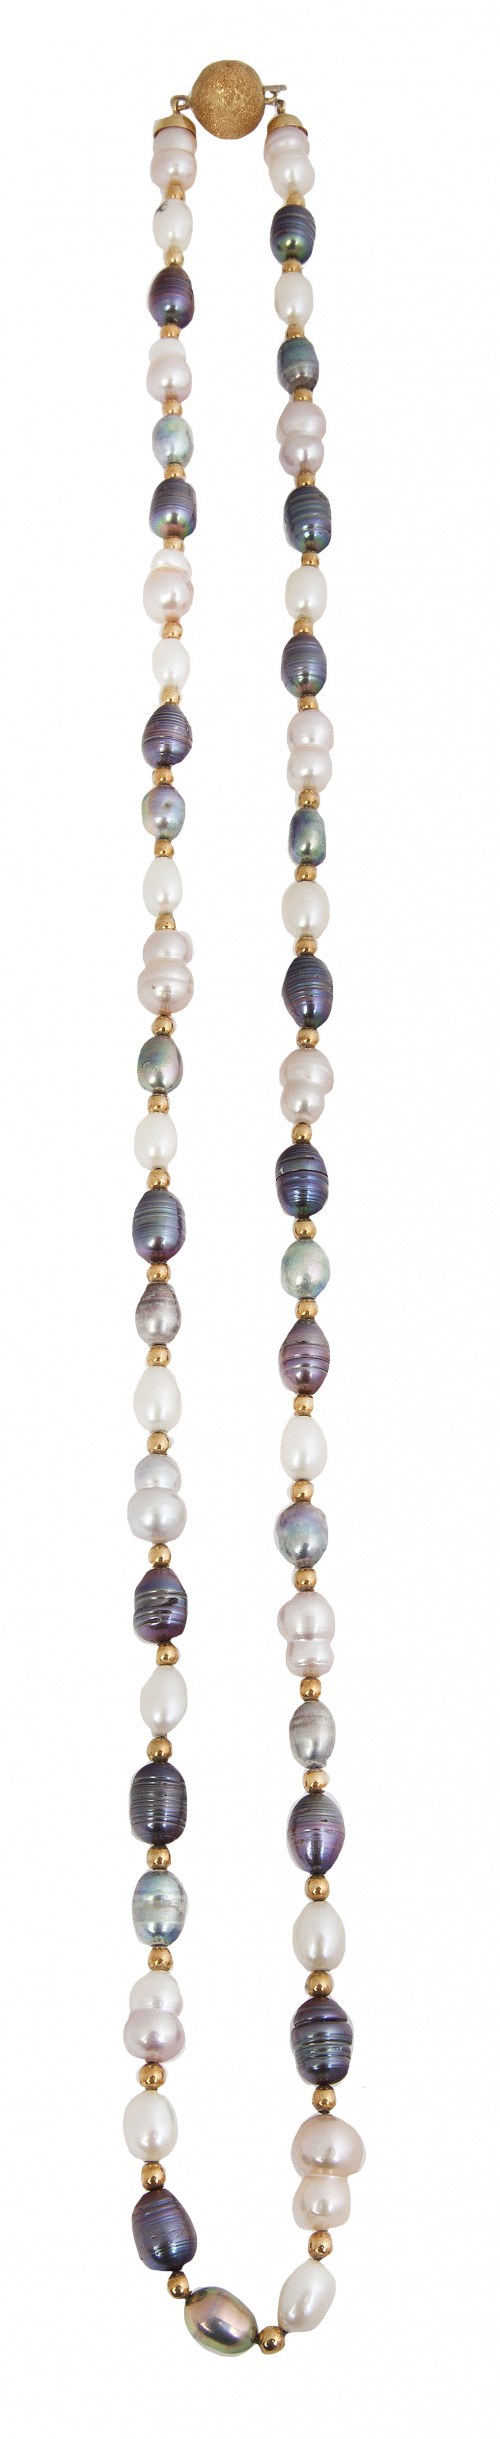 Collar de perlas barrocas multicolor alternas con bolitas d